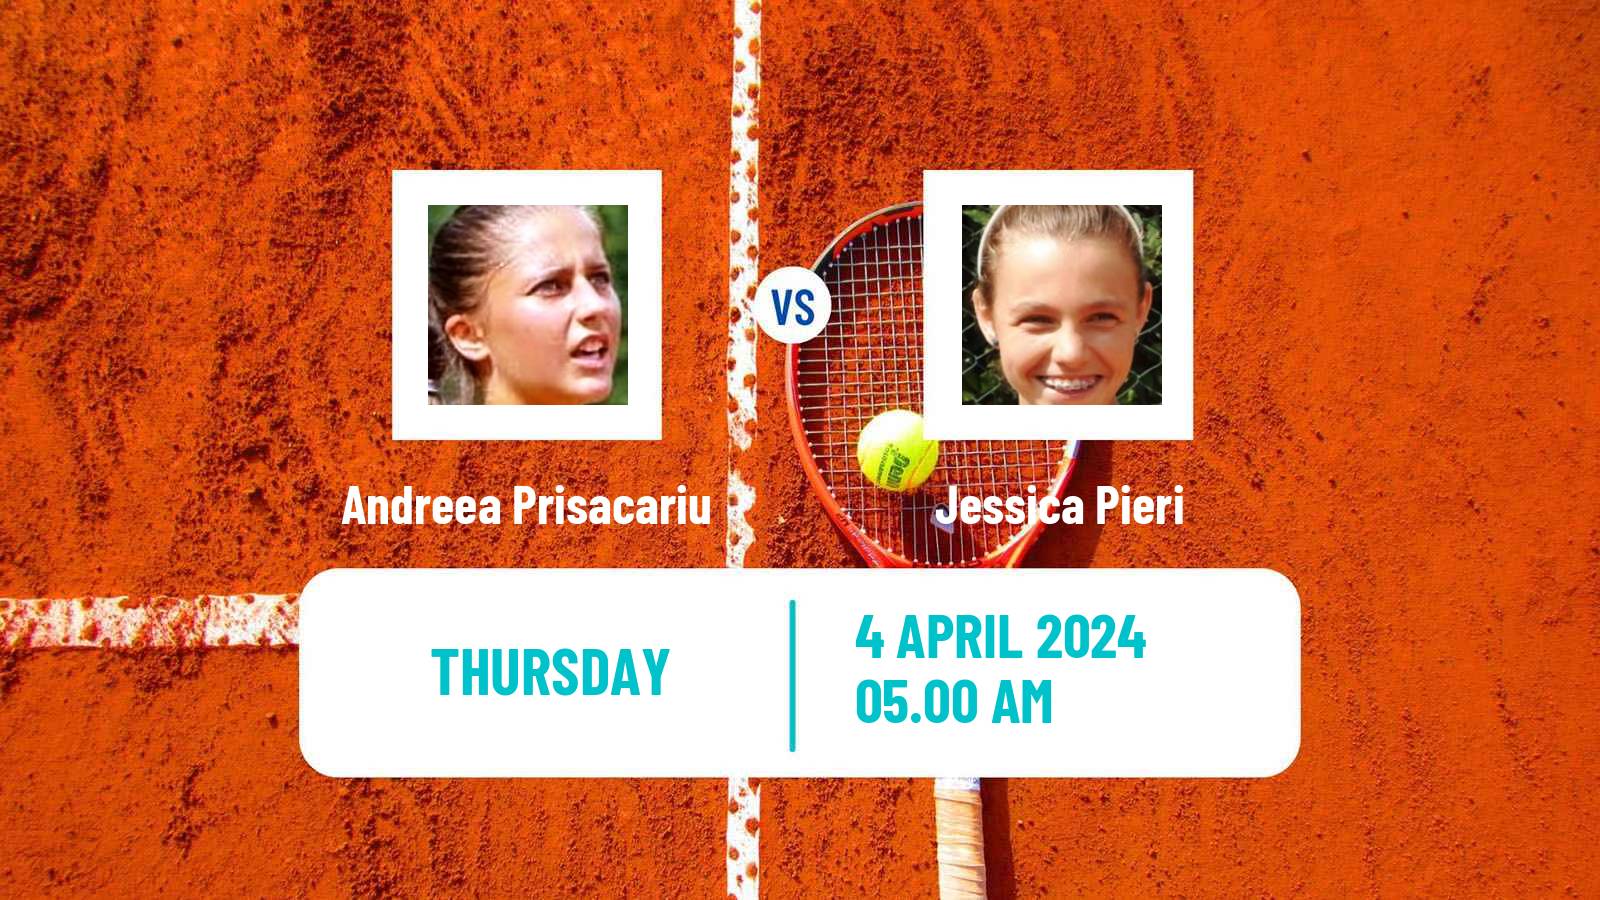 Tennis ITF W35 Santa Margherita Di Pula 2 Women Andreea Prisacariu - Jessica Pieri